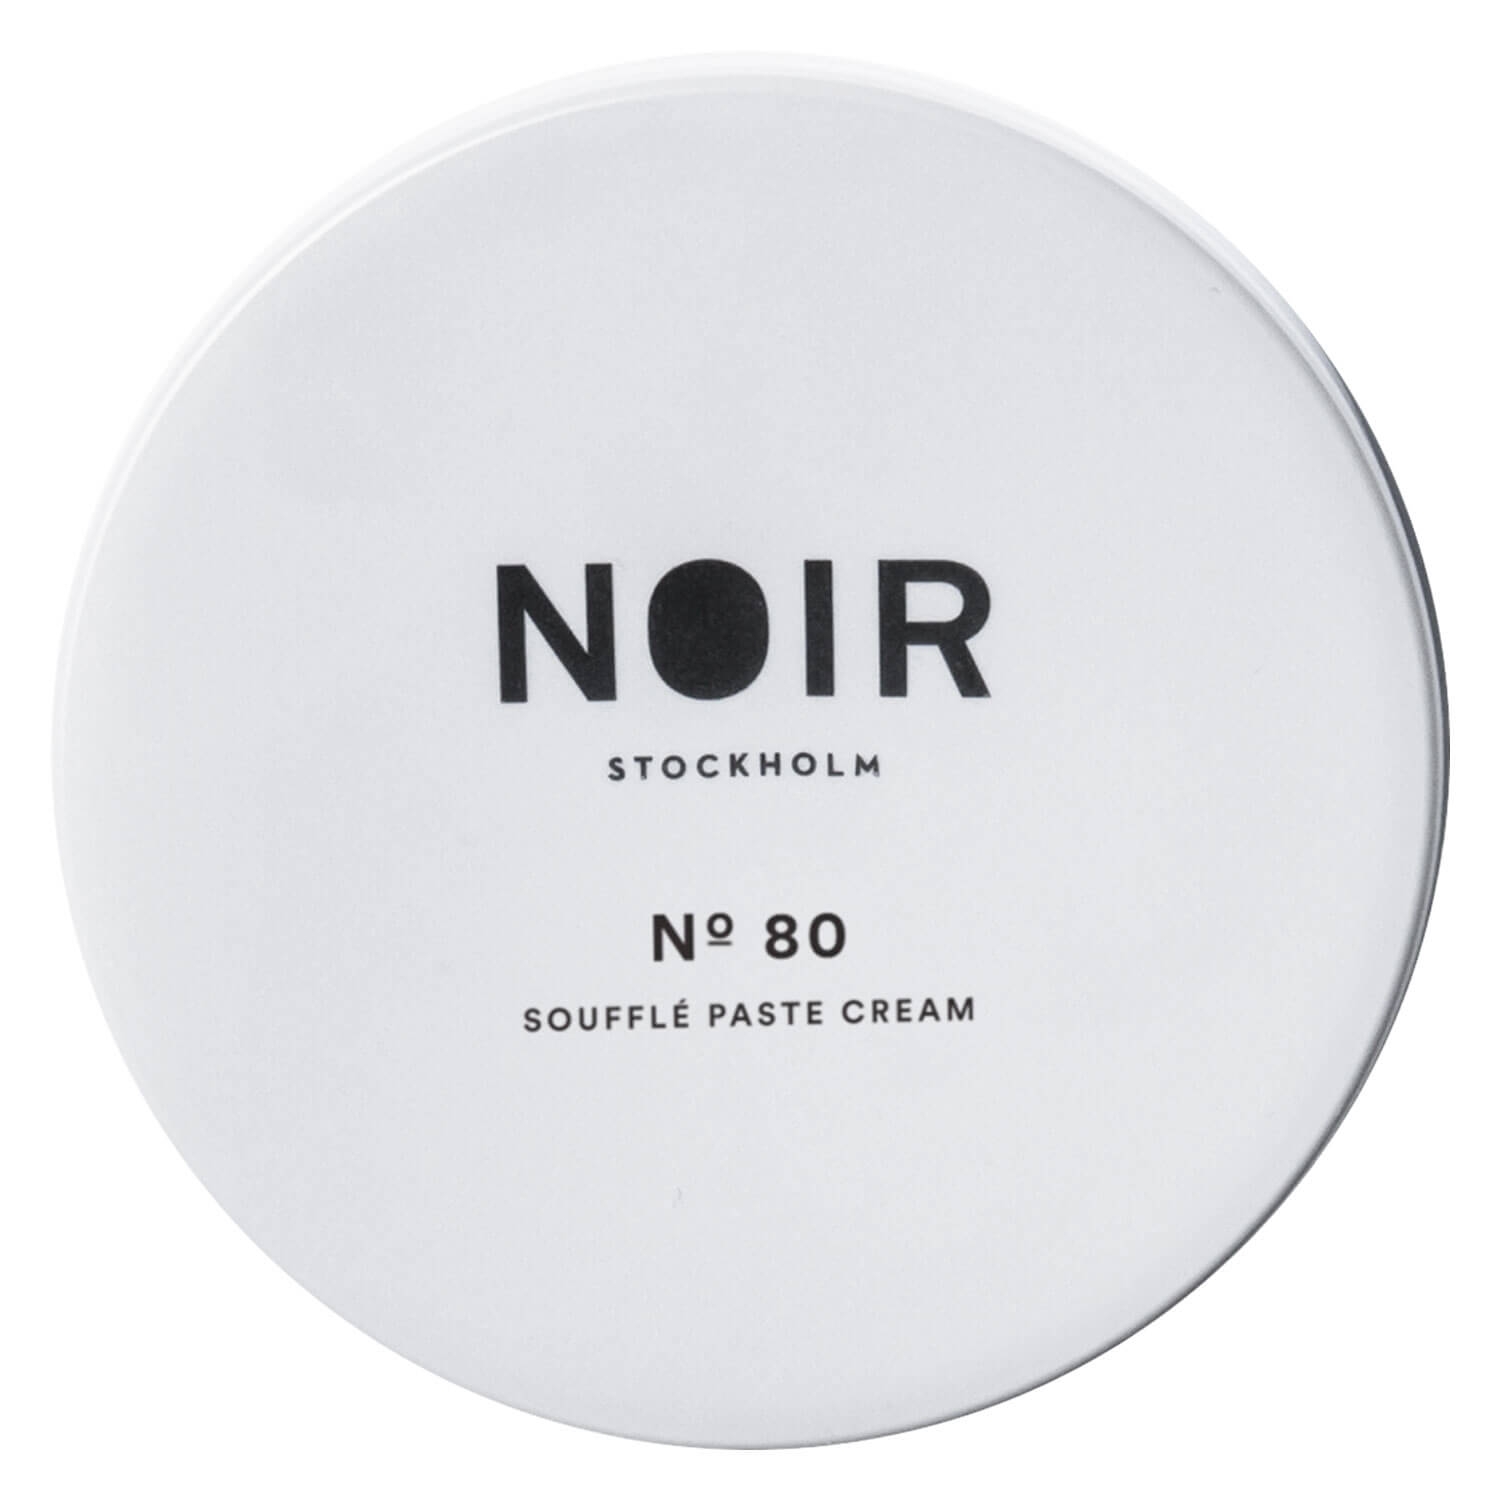 Produktbild von NOIR - No 80 Soufflé Paste Cream